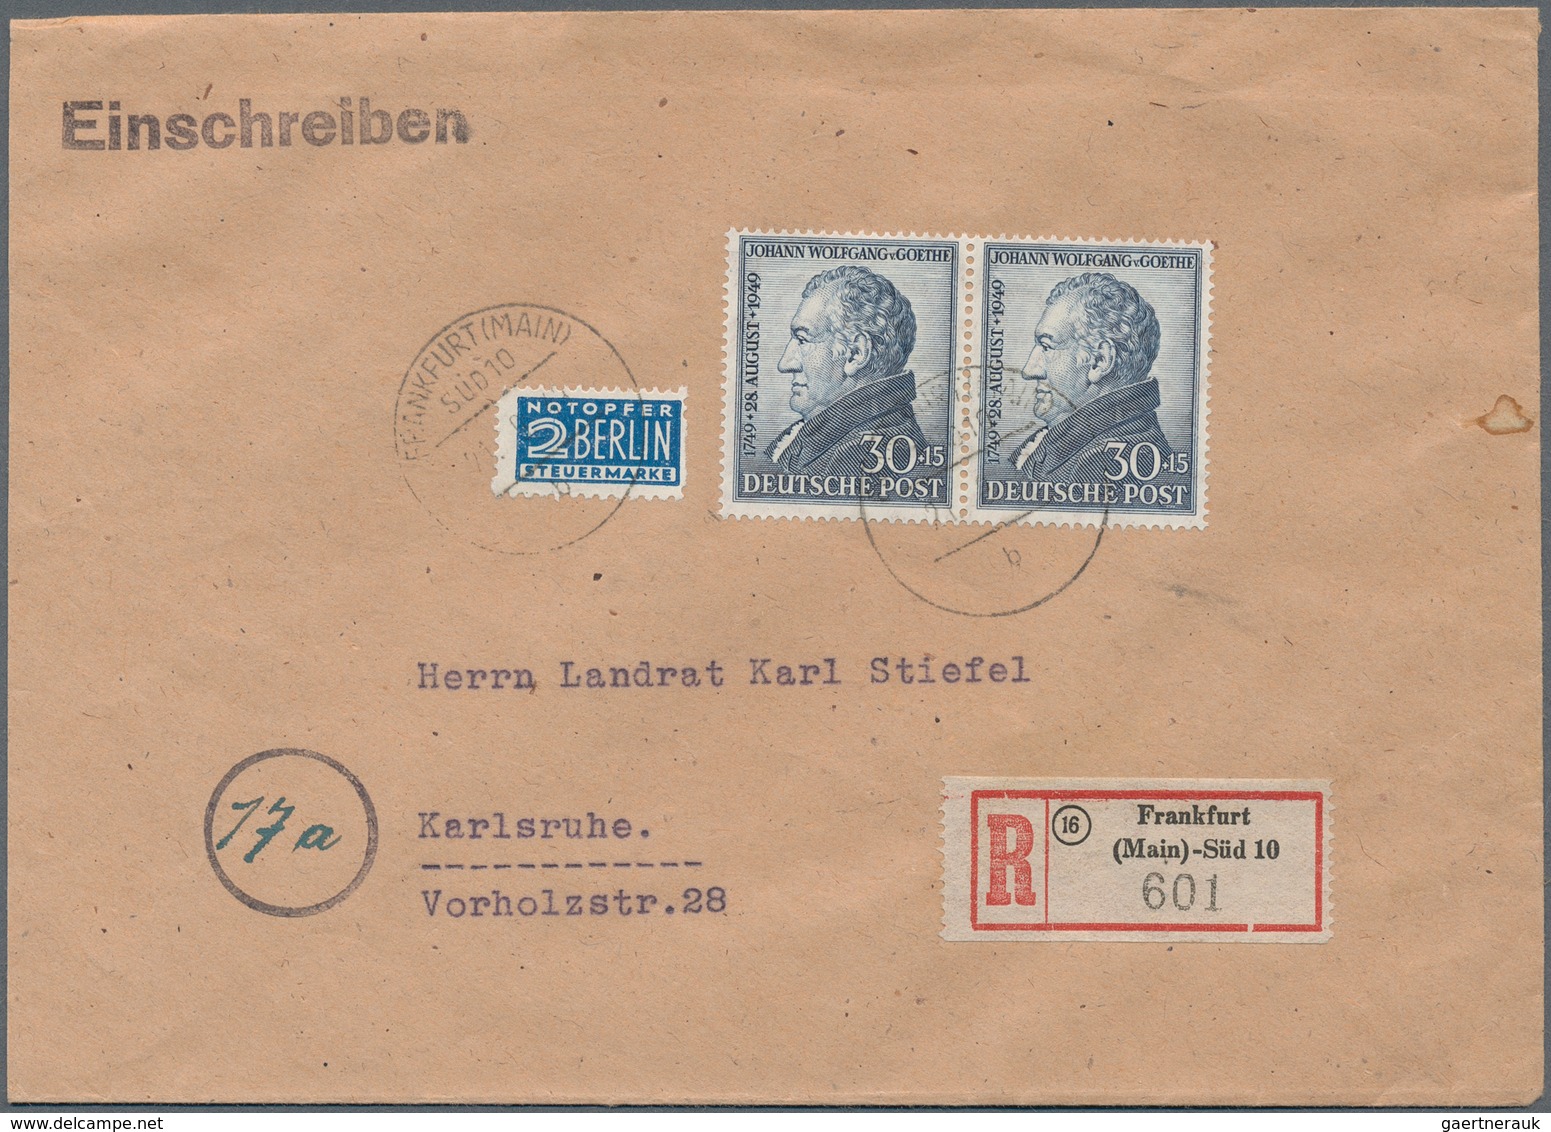 32627 Bizone: 1948-1950, Sammlung mit 350 Briefen FDC, Sonderkarten und anderen Belegen, es wurden nur Son